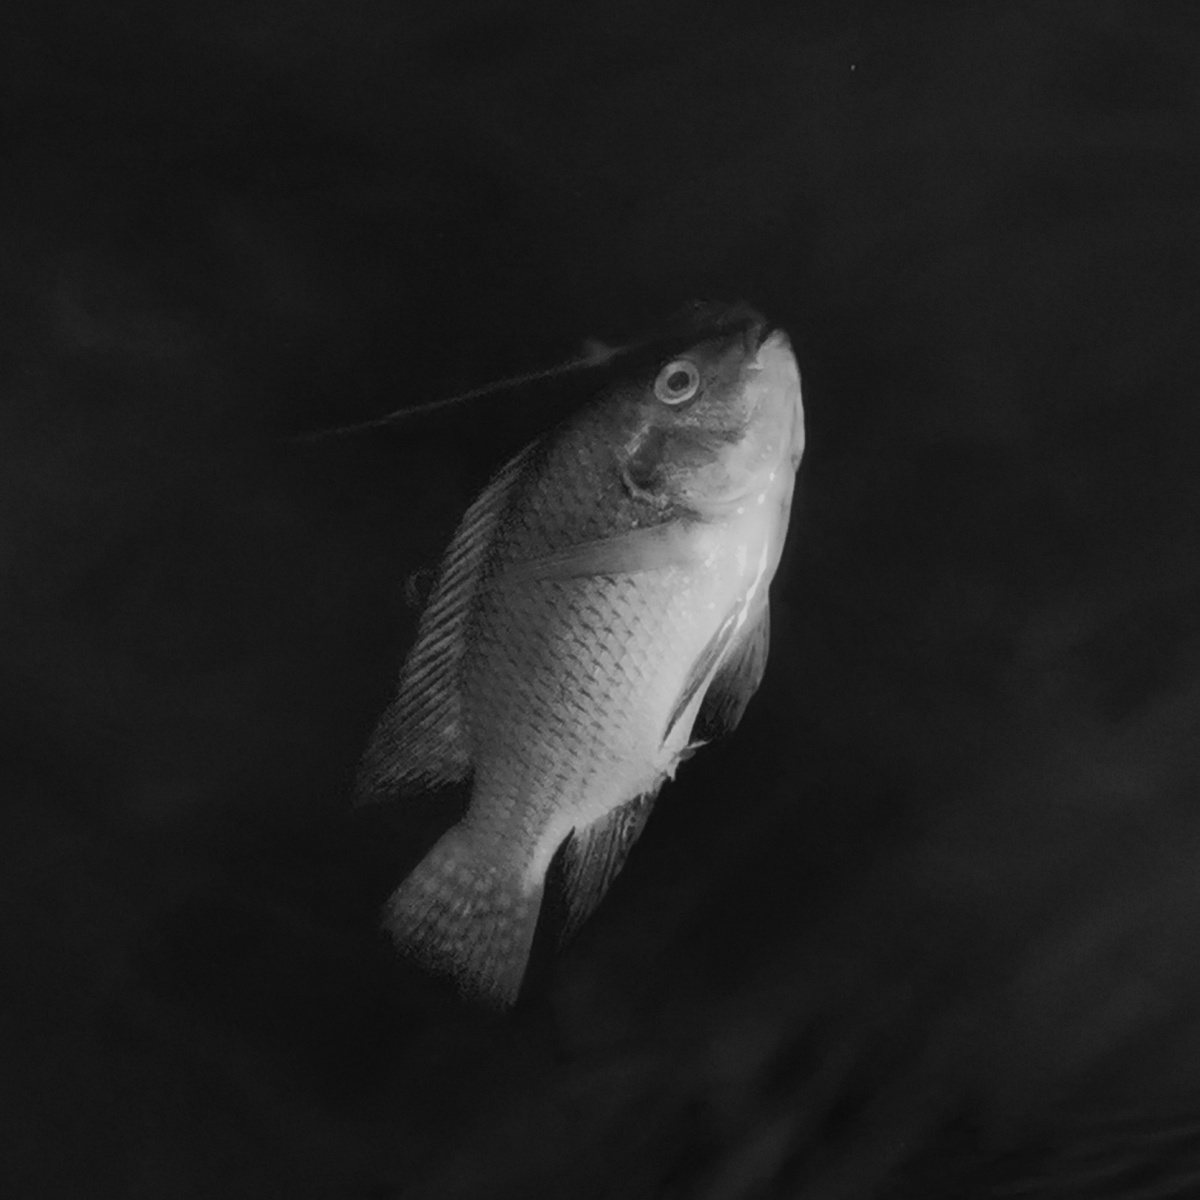 湖边一条黑白相间的死鱼